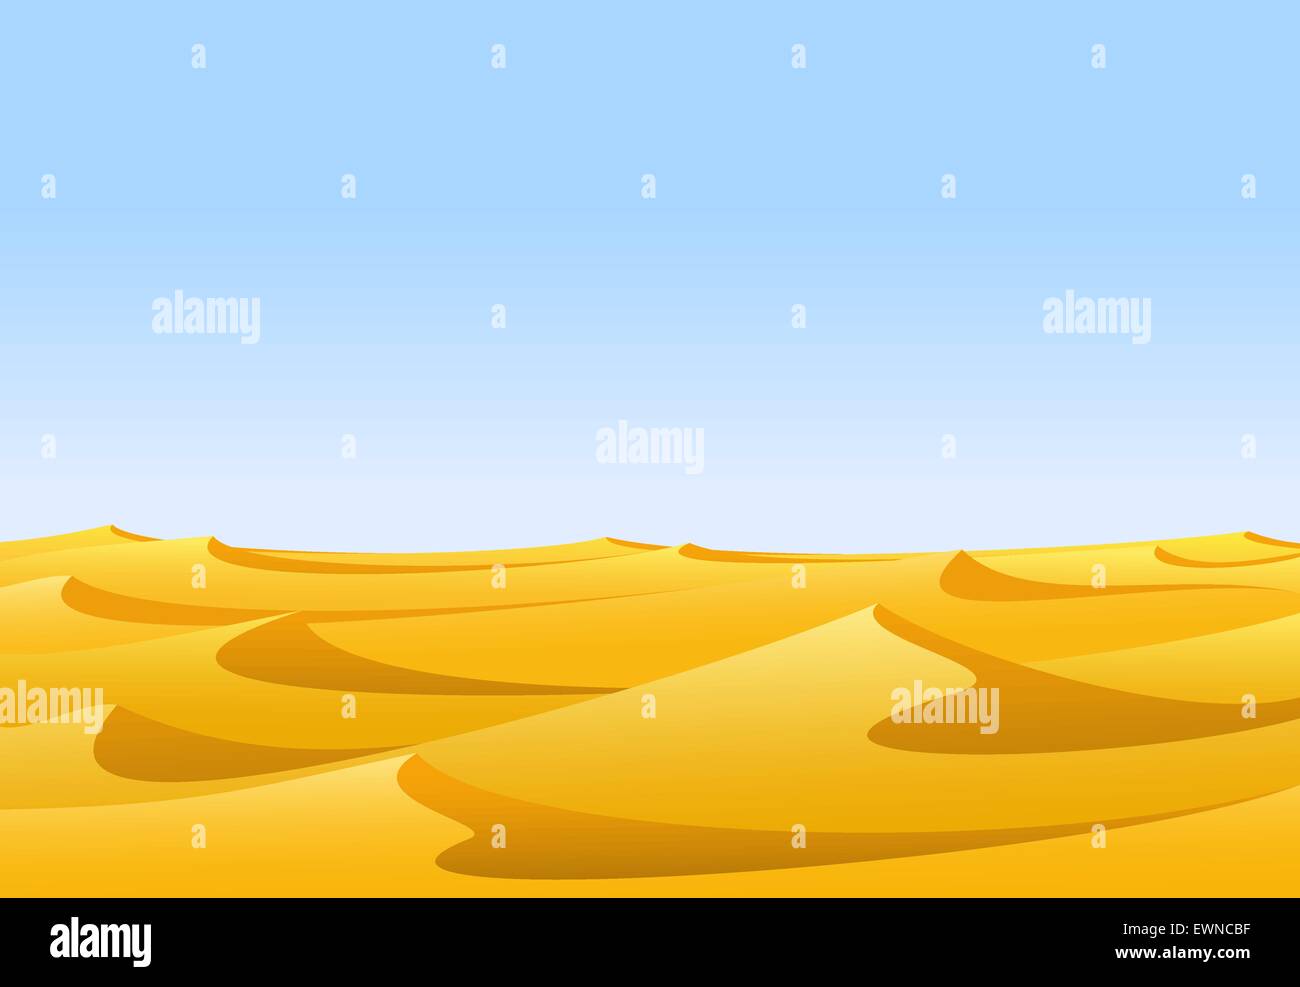 Chaude journée de désert aride avec des dunes de sable jaune et bleu ciel Illustration de Vecteur